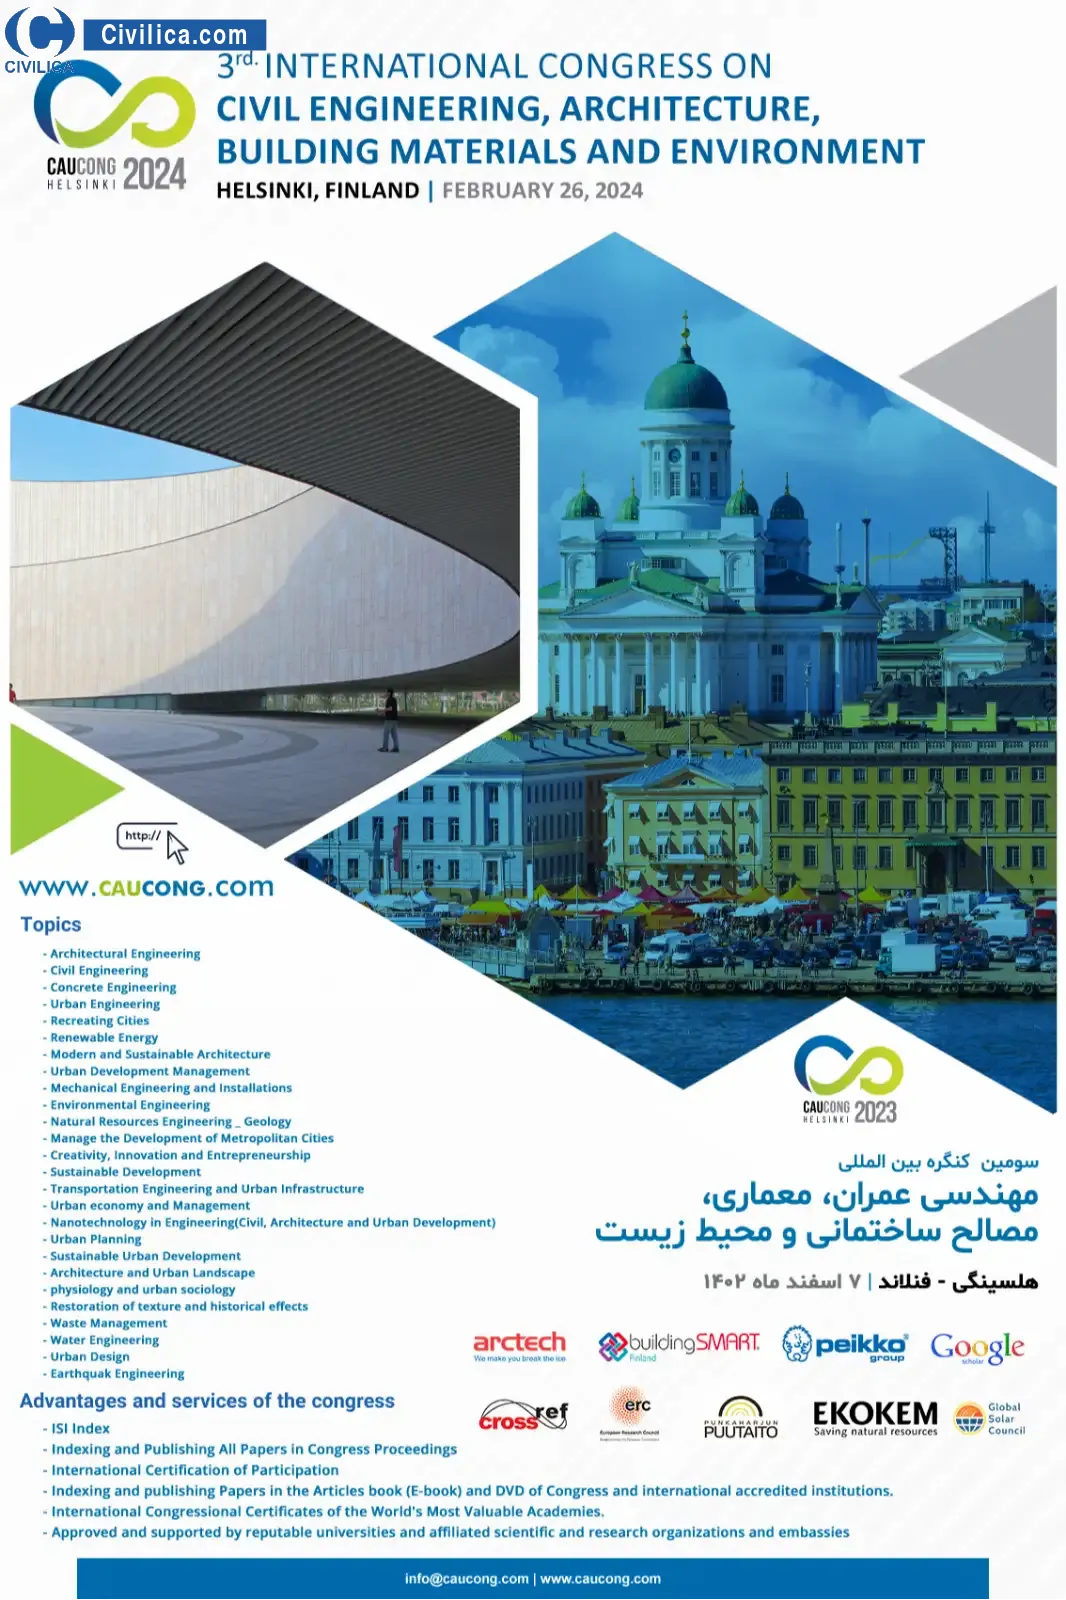 سومین کنگره بین المللی مهندسی عمران، معماری، مصالح ساختمانی و محیط زیست